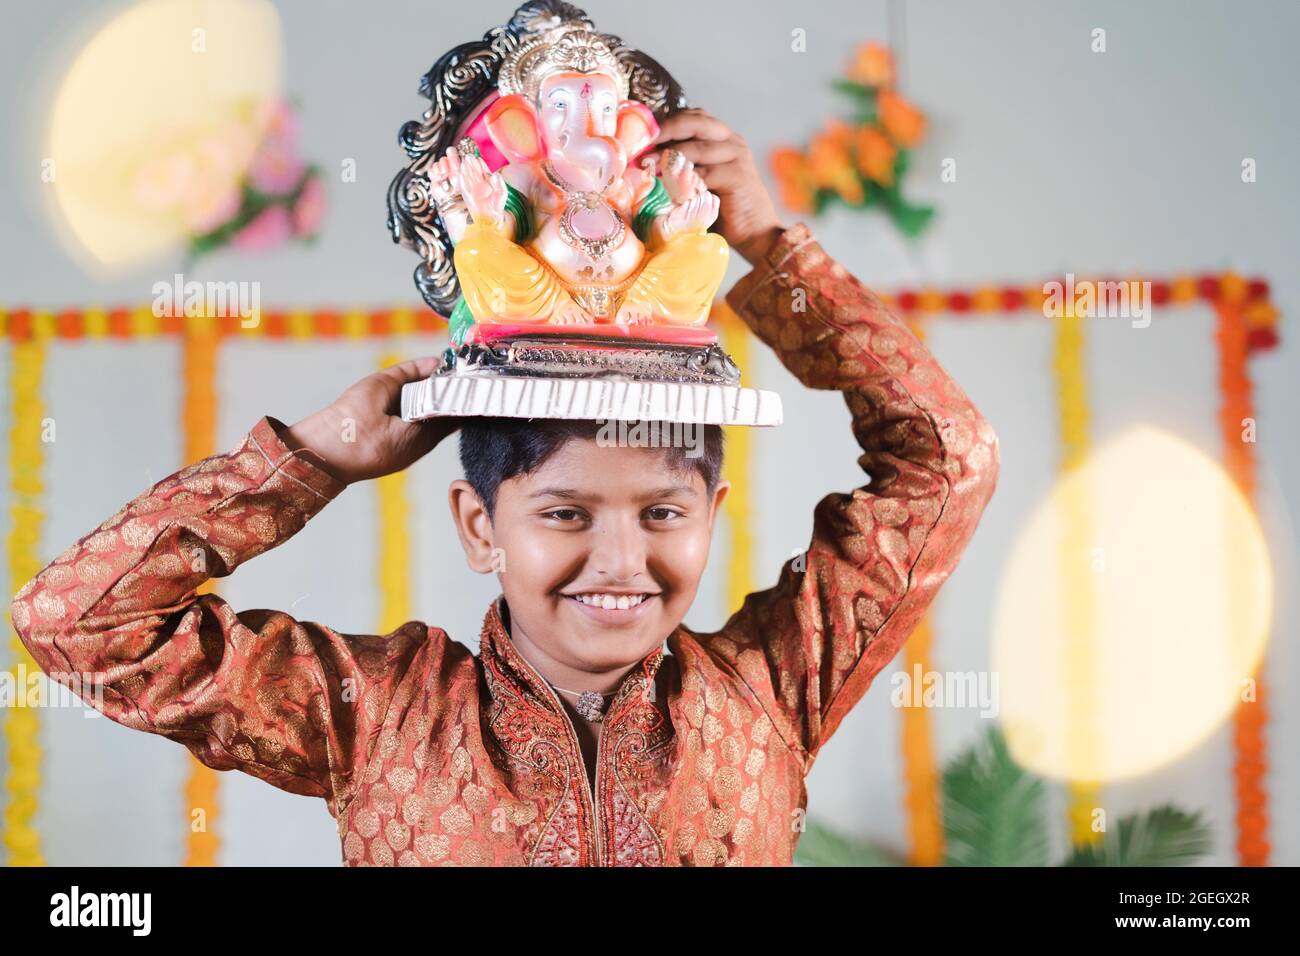 Fröhliches lächelndes Kind während des ganesha-Festivals mit traditioneller Kleidung, die Lord vinayaka für Visarjan oder Immersion während der religiösen Feier trägt Stockfoto